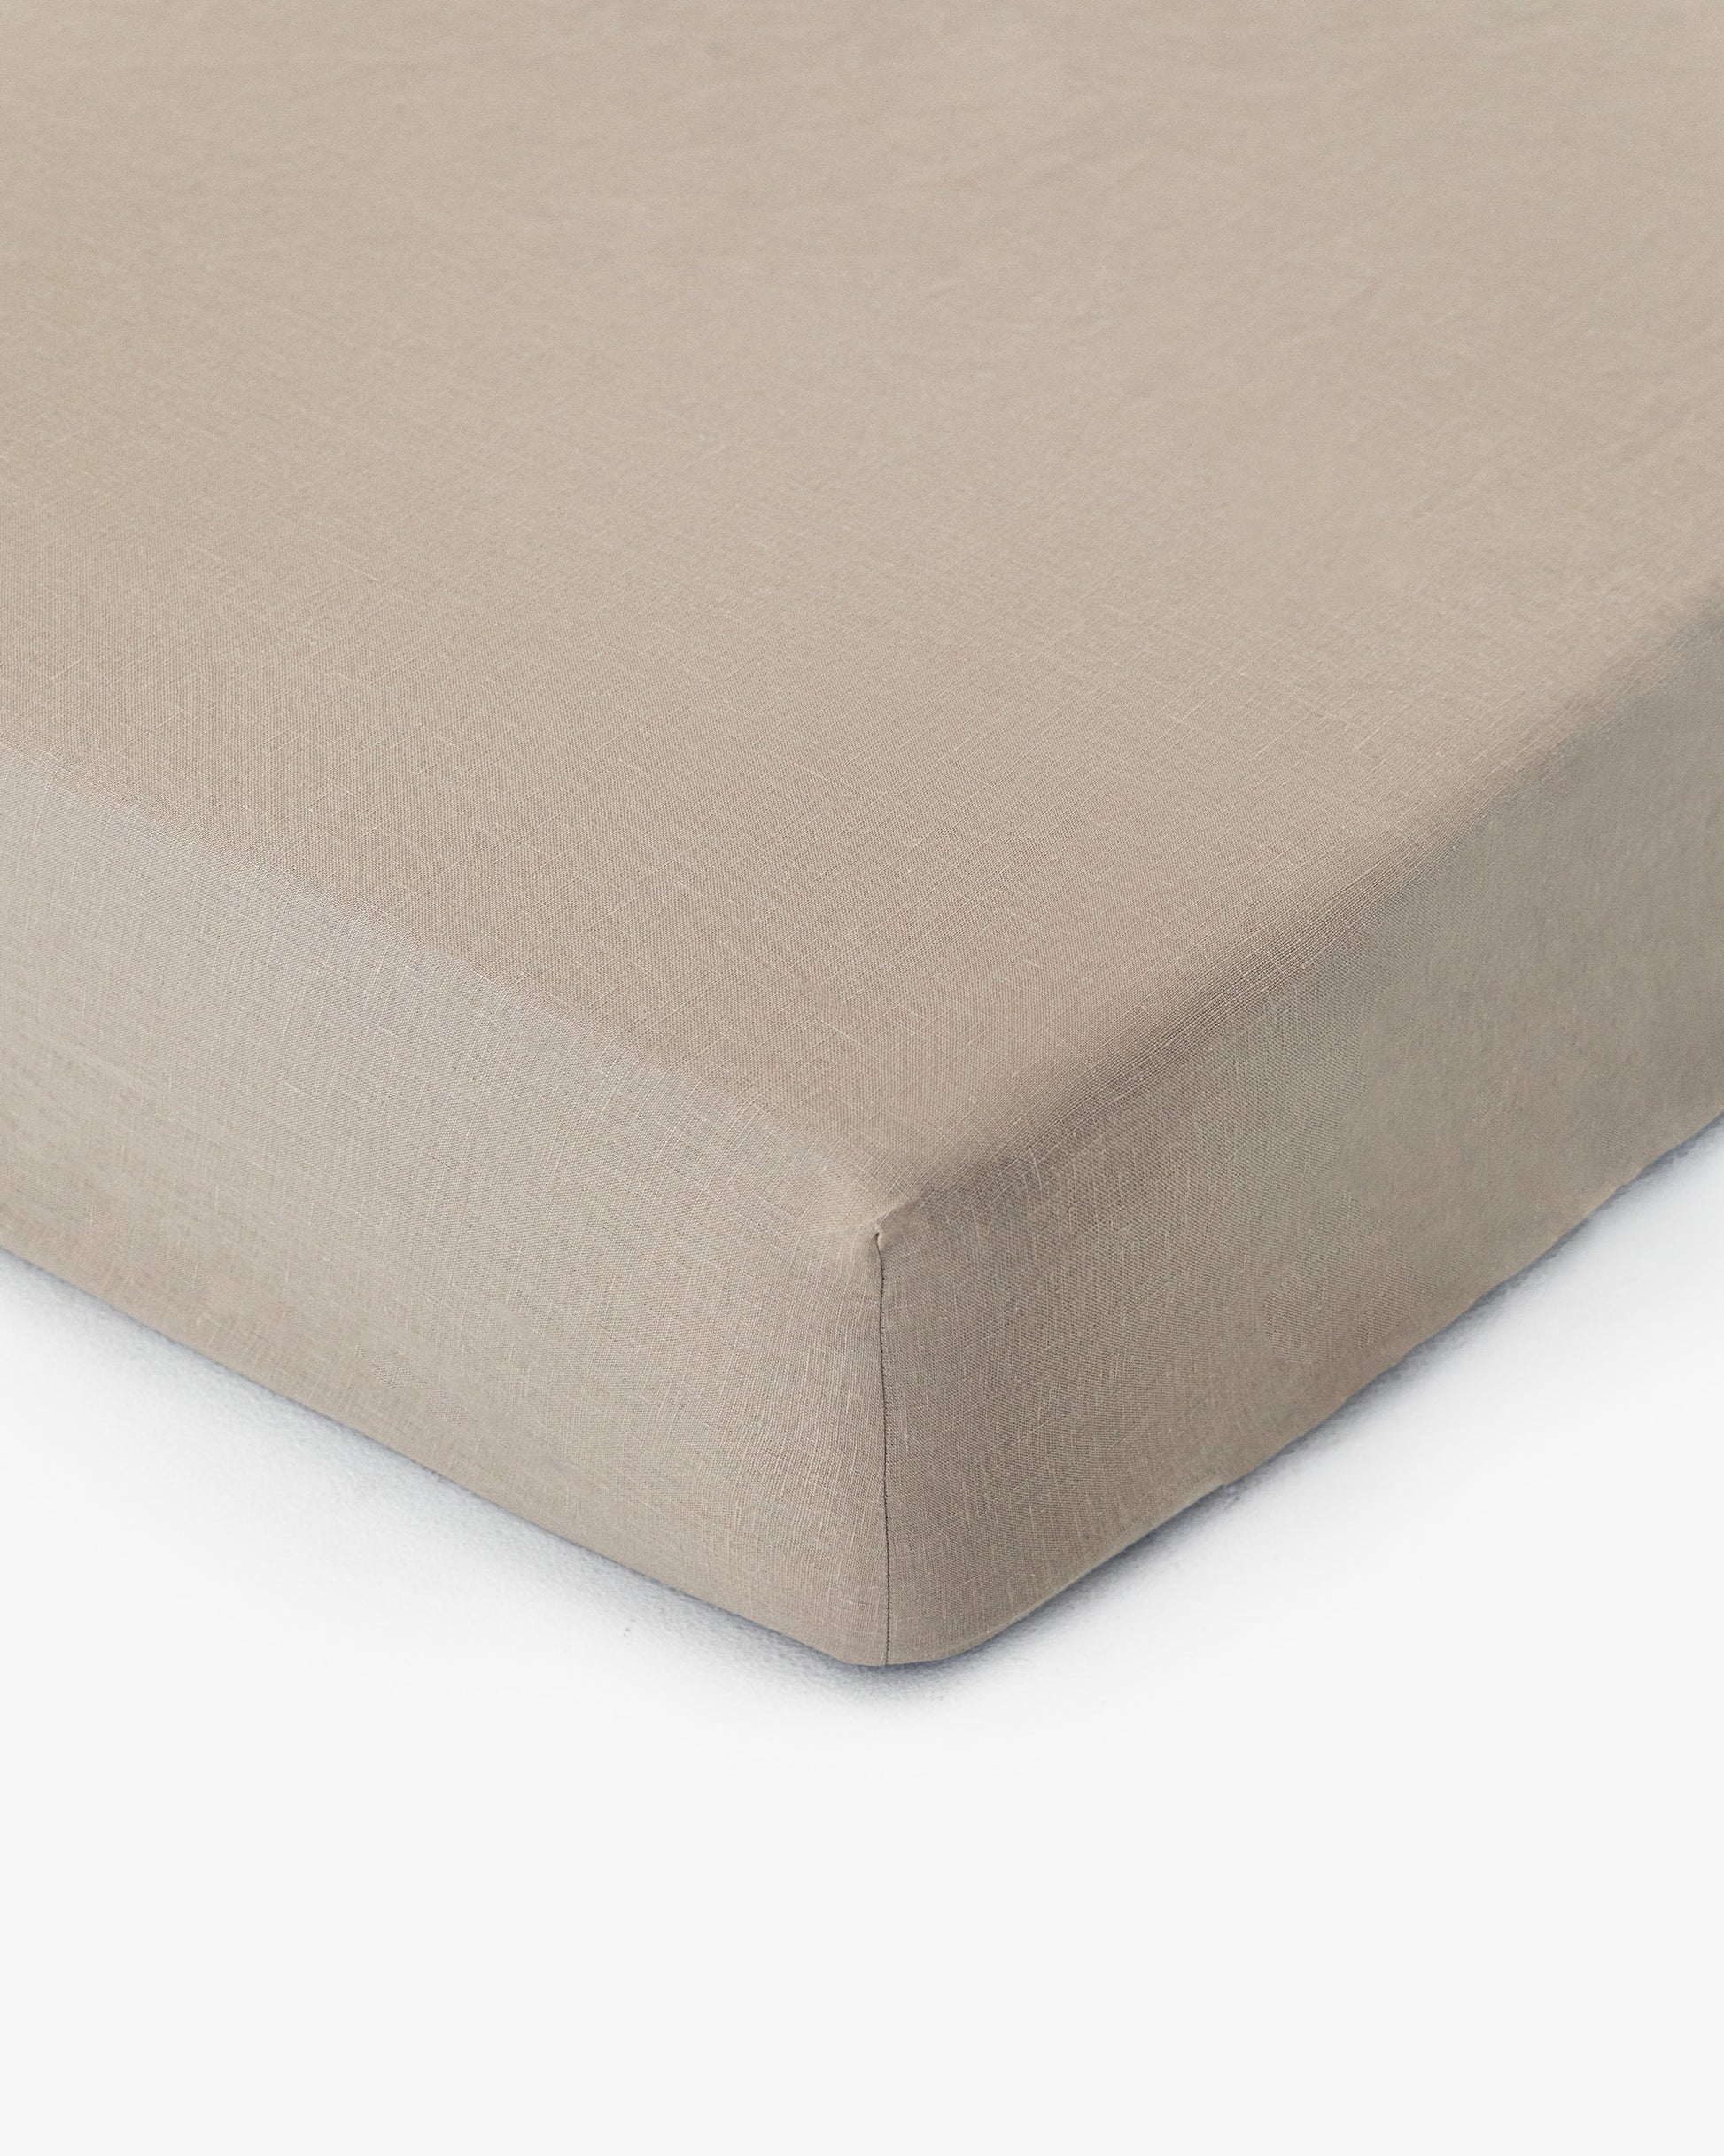 Natural linen fitted sheet - MagicLinen